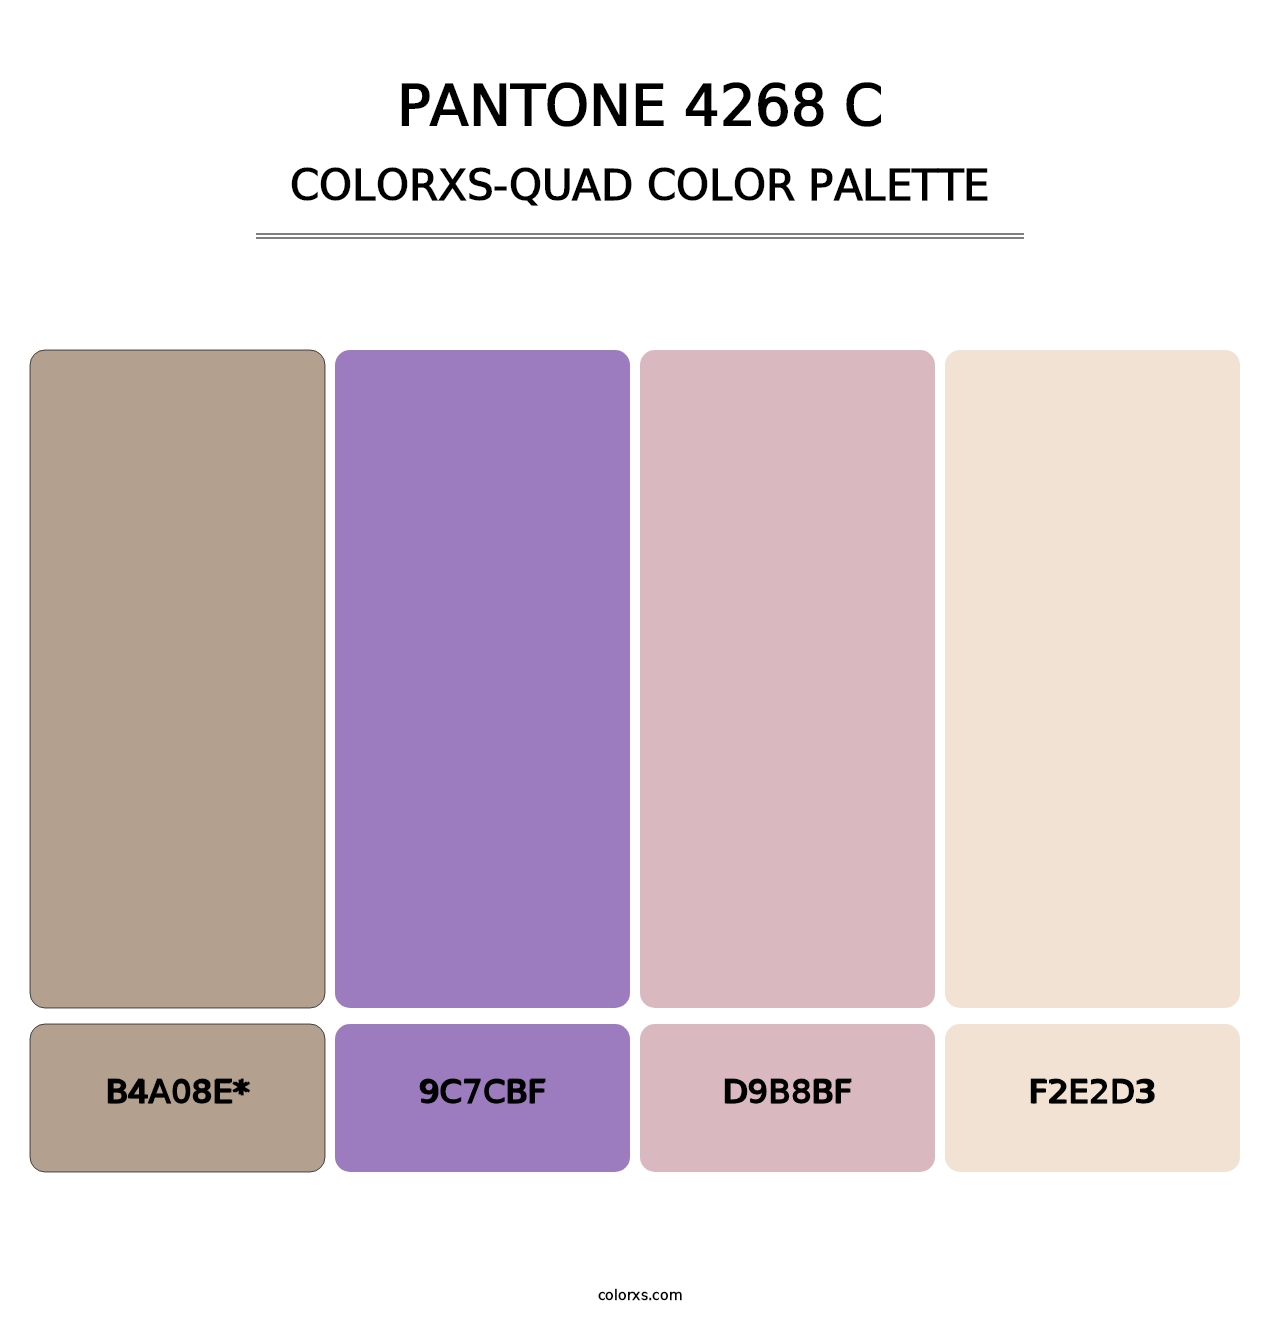 PANTONE 4268 C - Colorxs Quad Palette